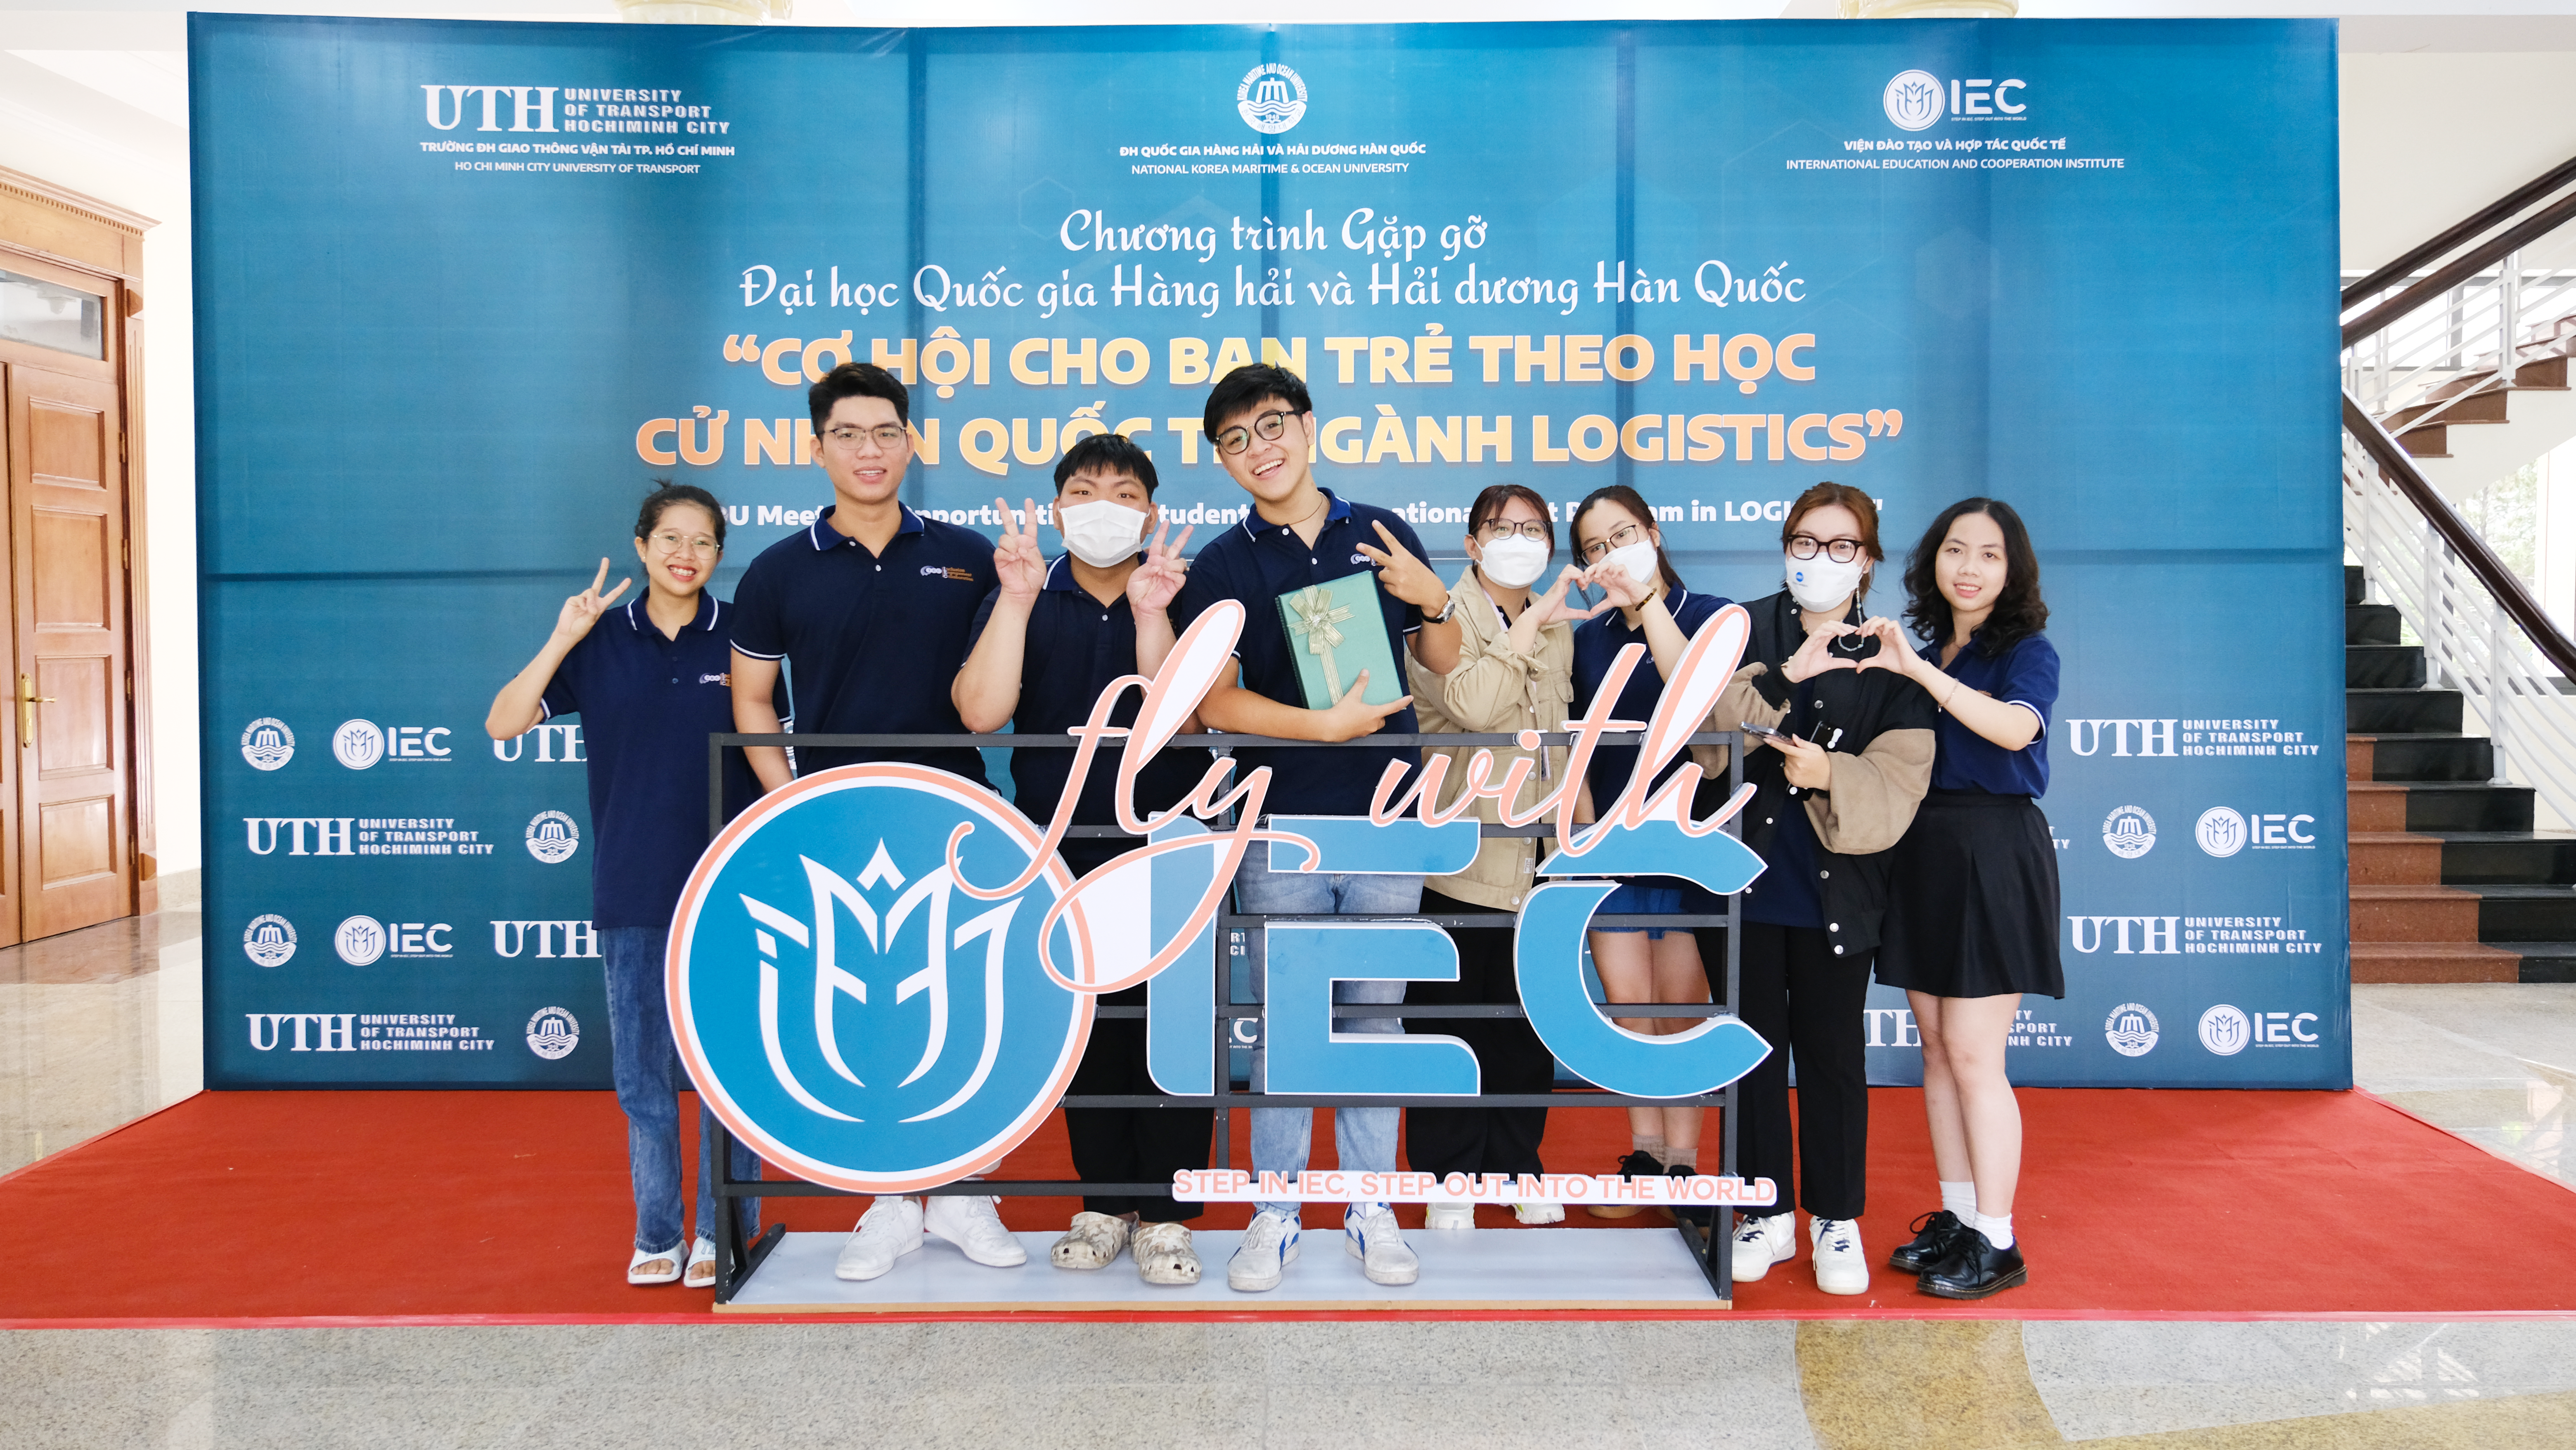 Gặp gỡ ĐH Hàng hải và Hải dương Hàn Quốc: Cơ hội cho sinh viên theo học Cử nhân liên kết Logistics và Quản lý Chuỗi cung ứng